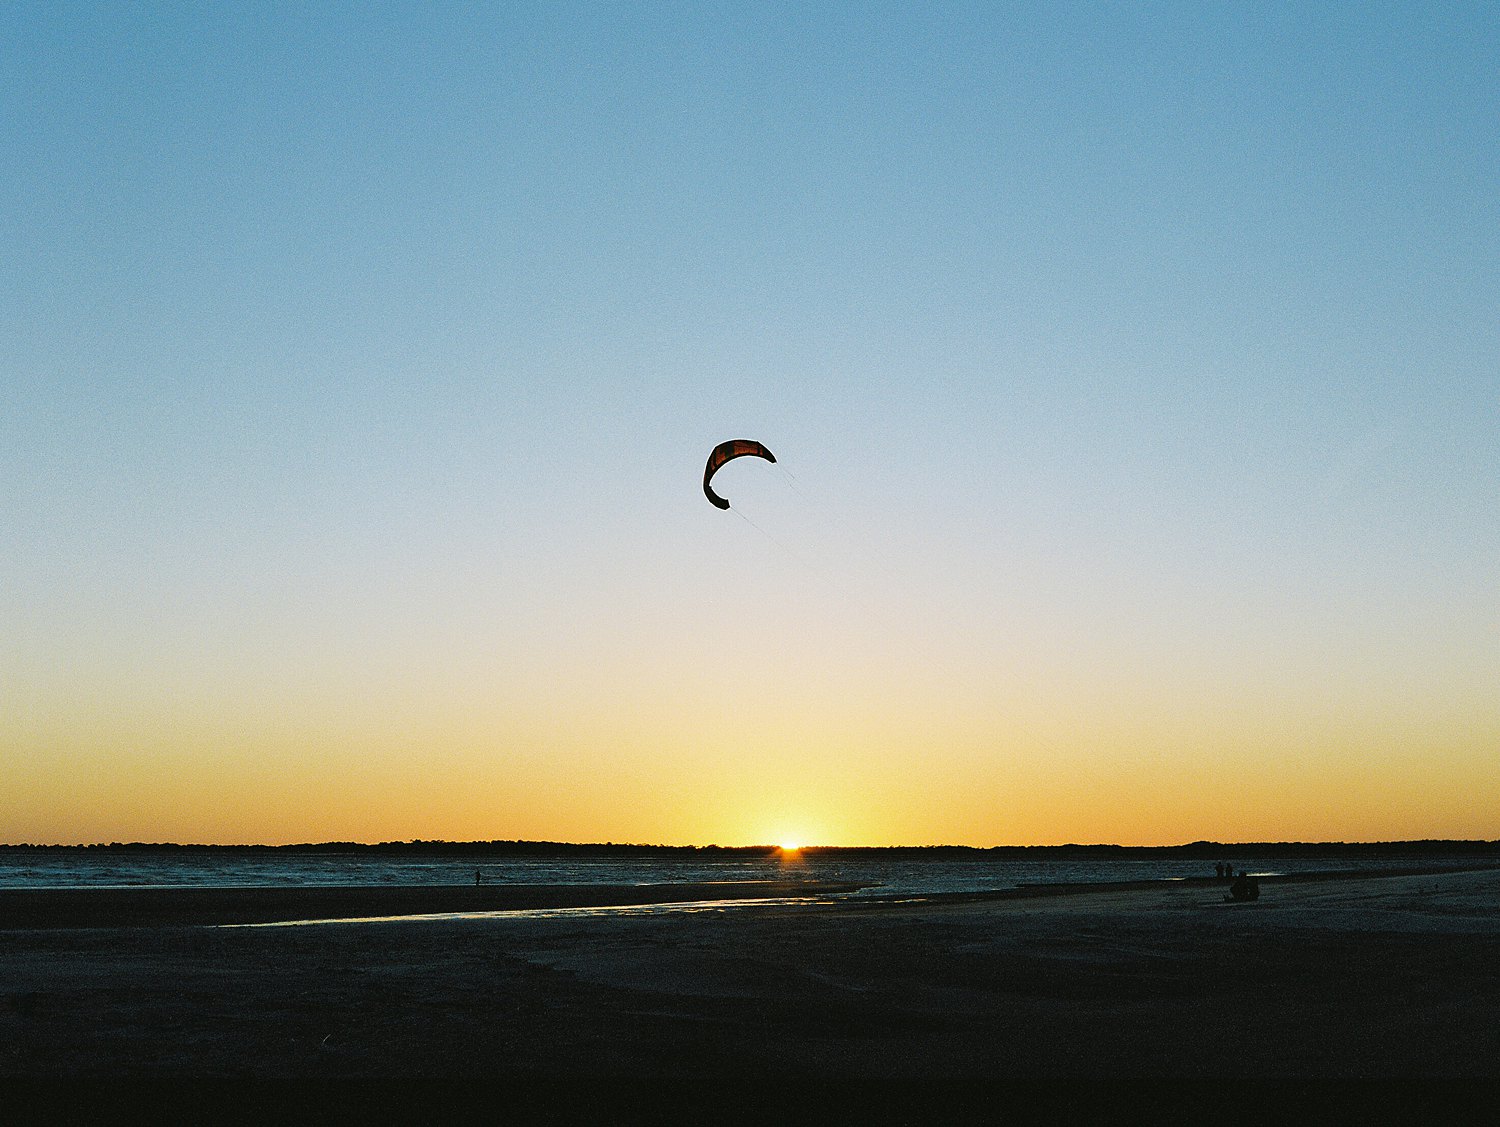 kite flying against blue evening sunset sky